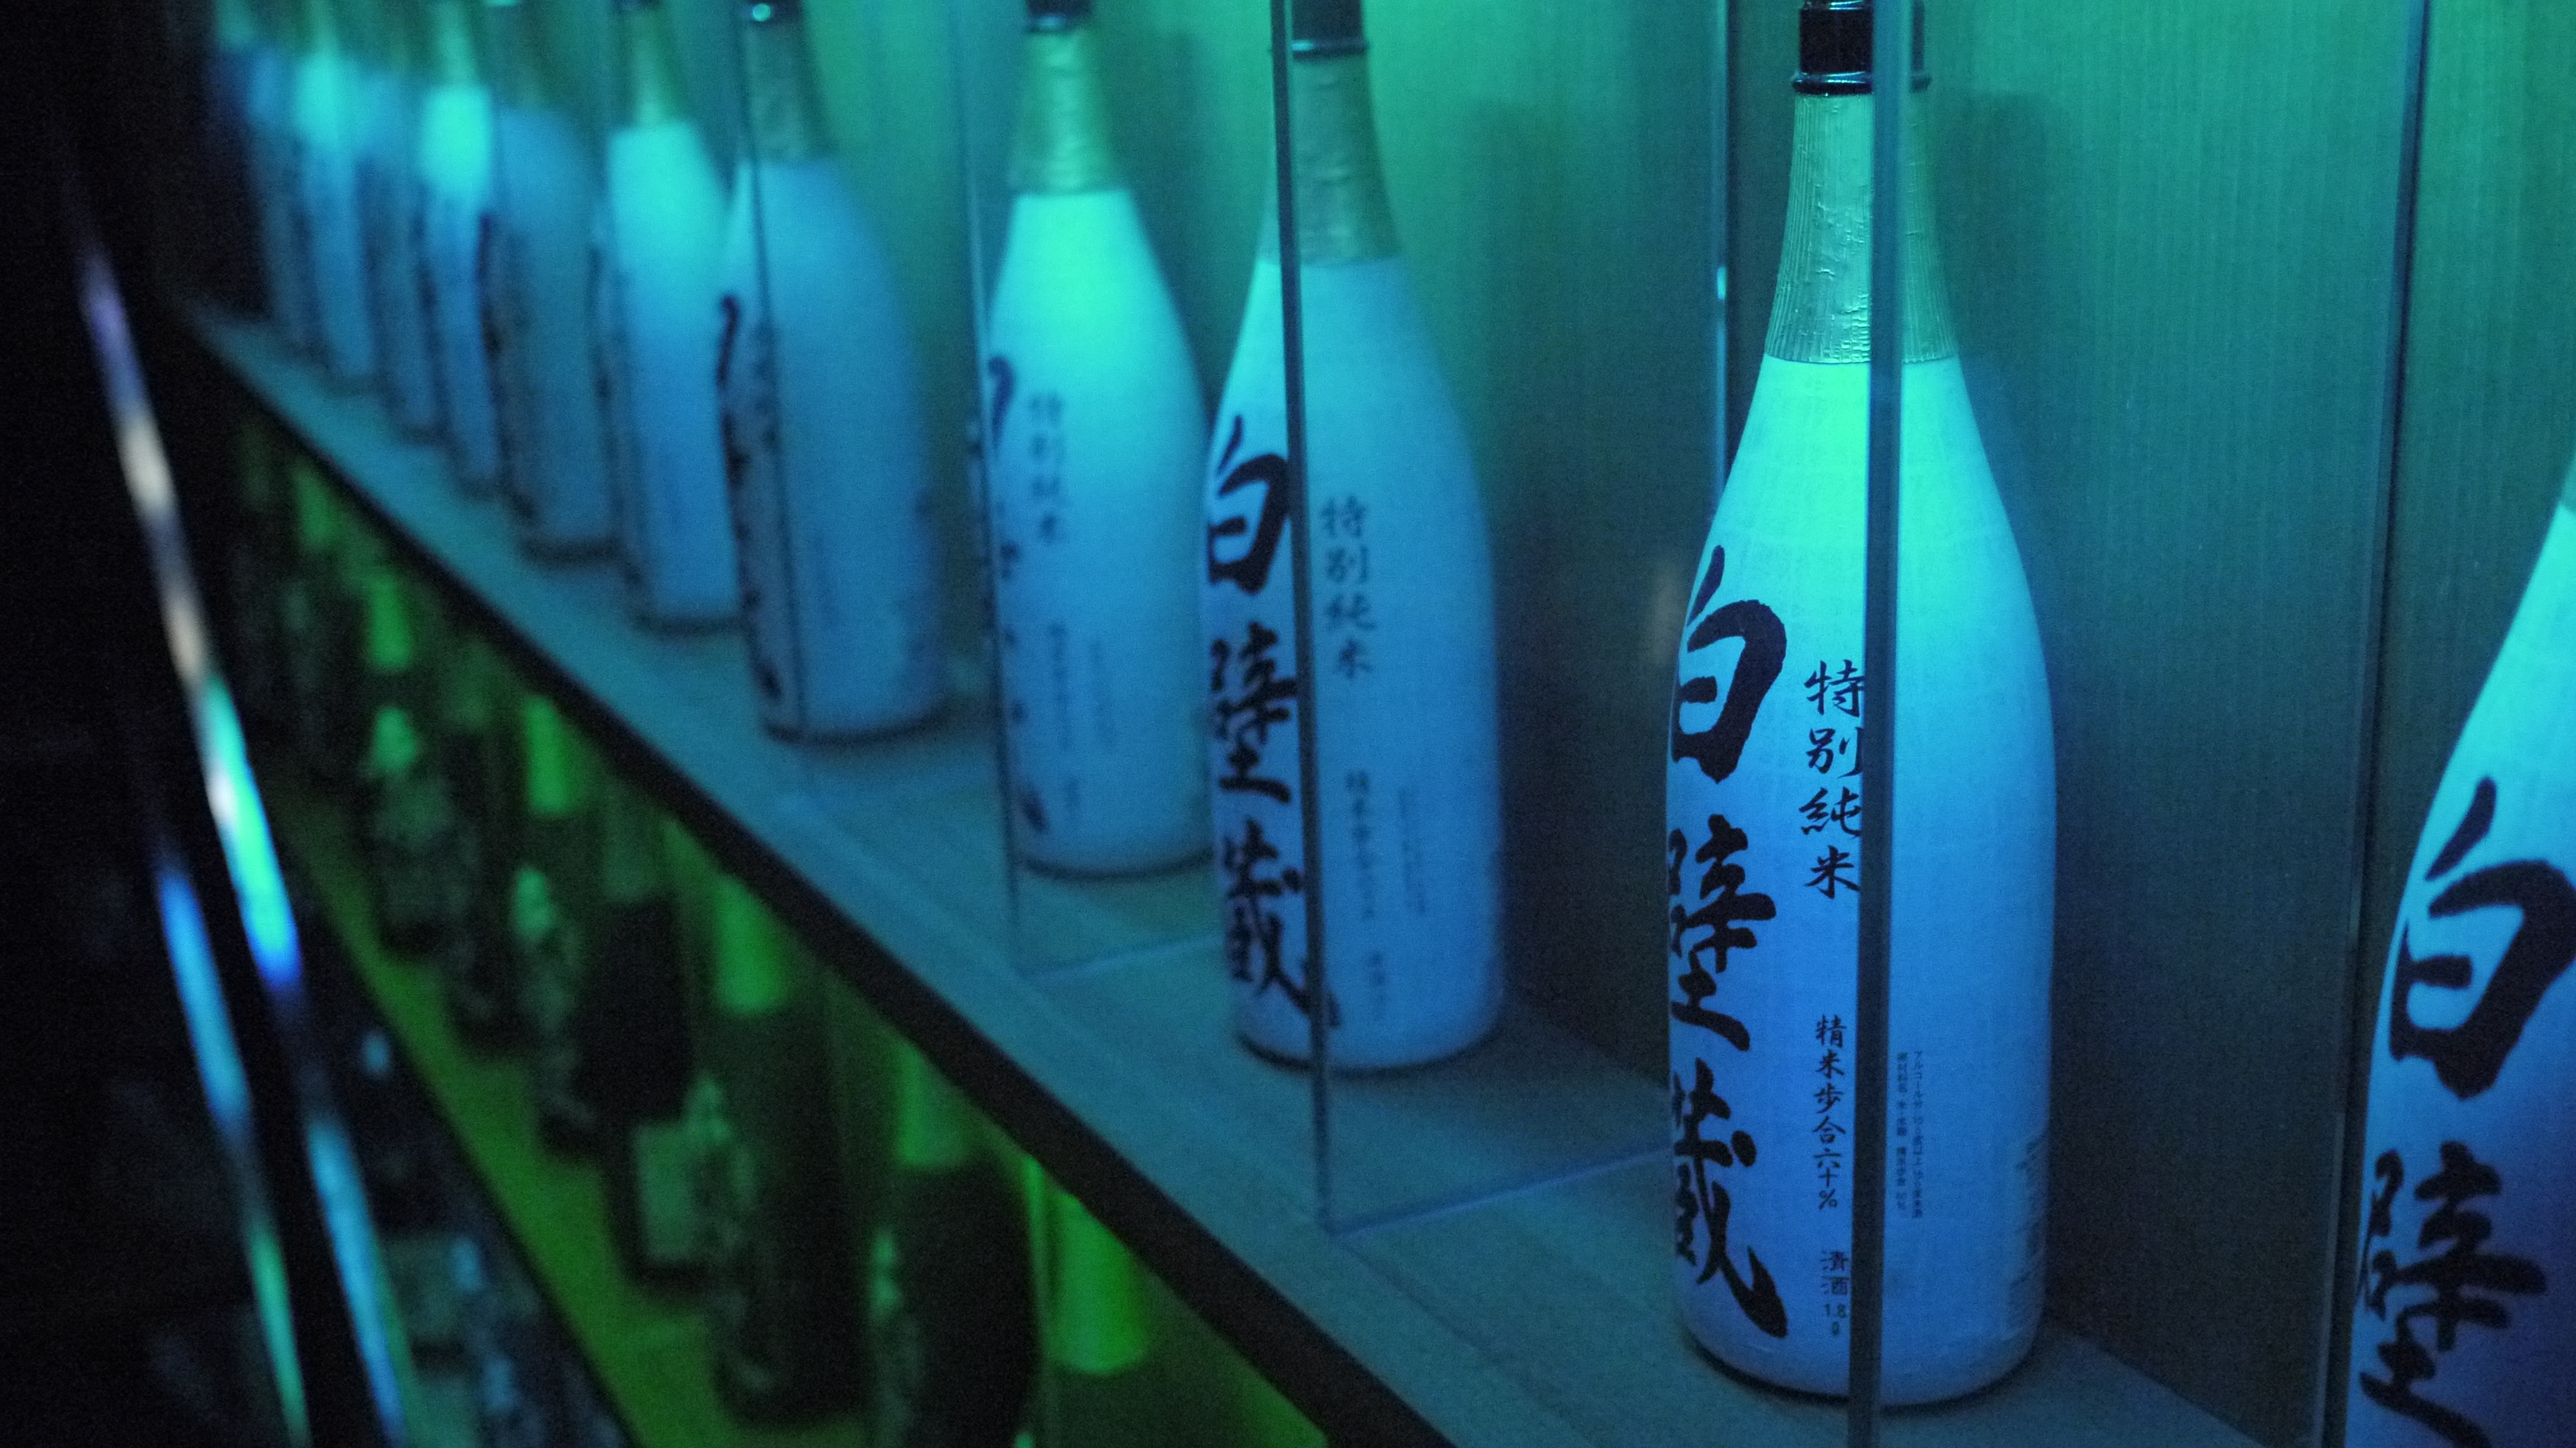 Sake Wallpapers